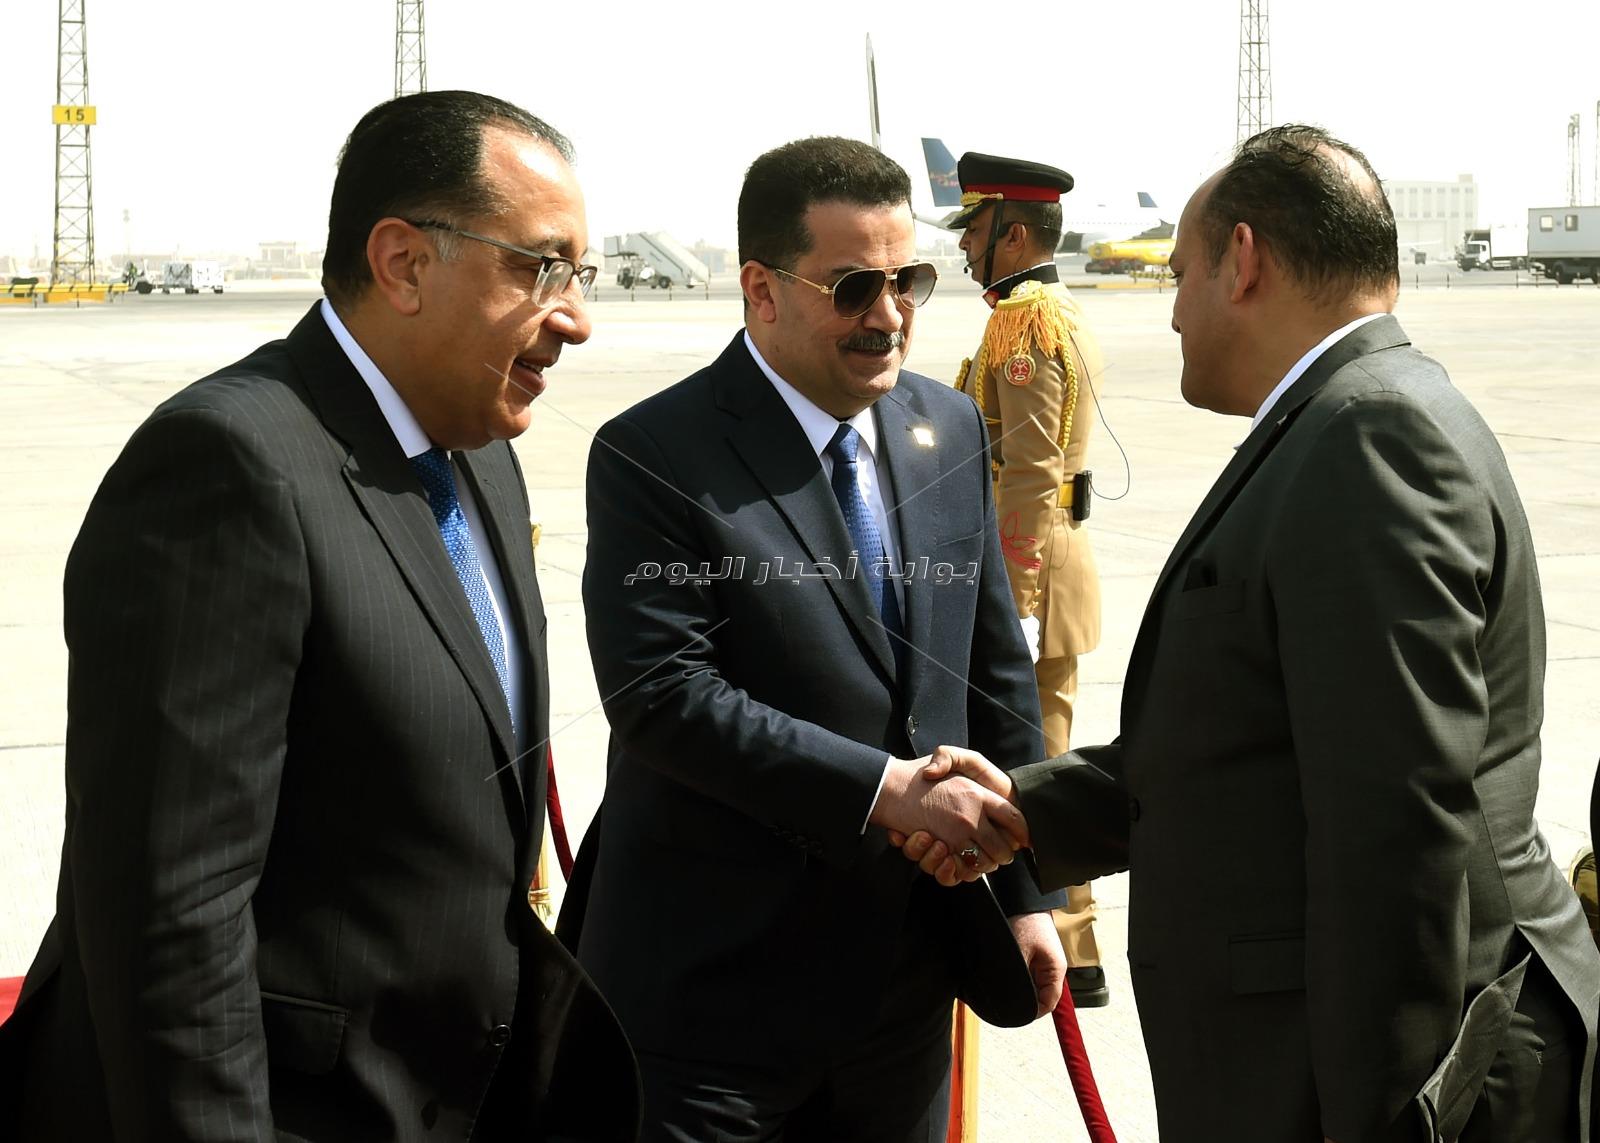 رئيس الوزراء يستقبل نظيره العراقي بمطار القاهرة